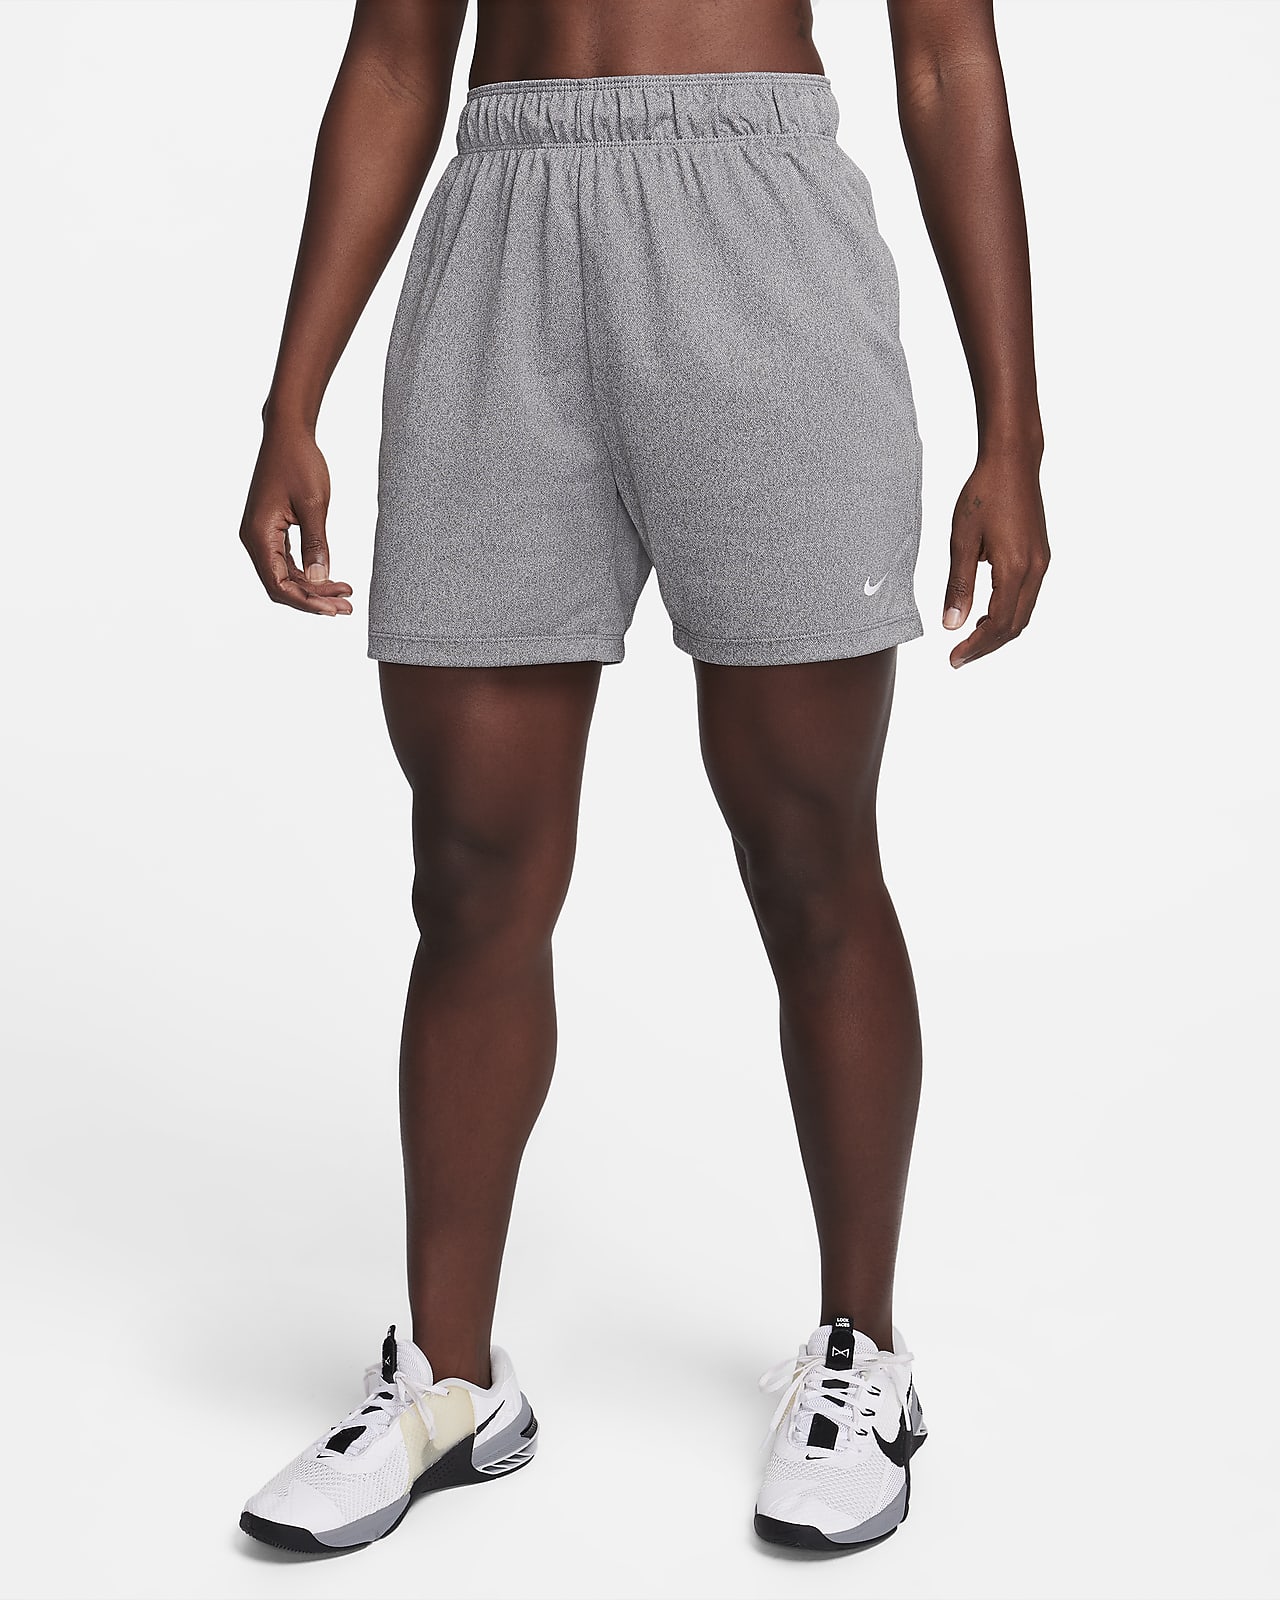 Nike Shorts Set - T-shirt/Shorts - Air - Black/Blue